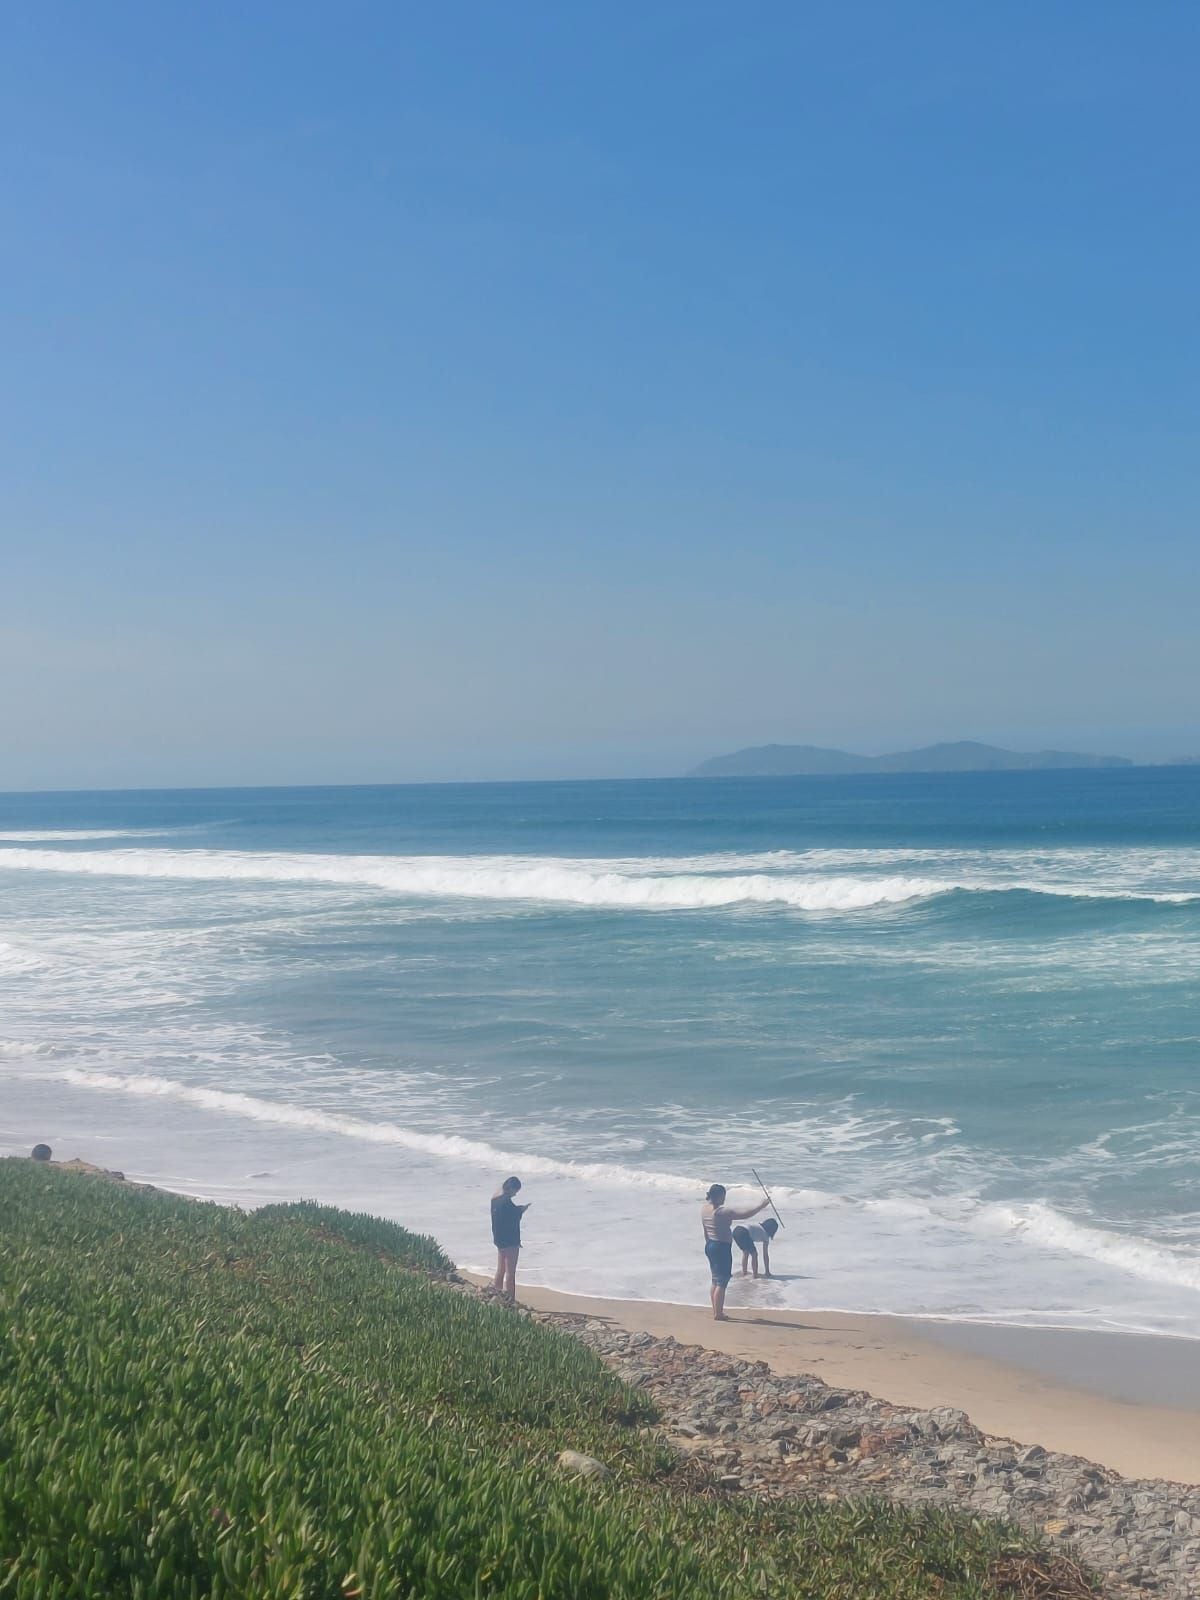 Reporta poca afluencia de turistas playas de Tijuana